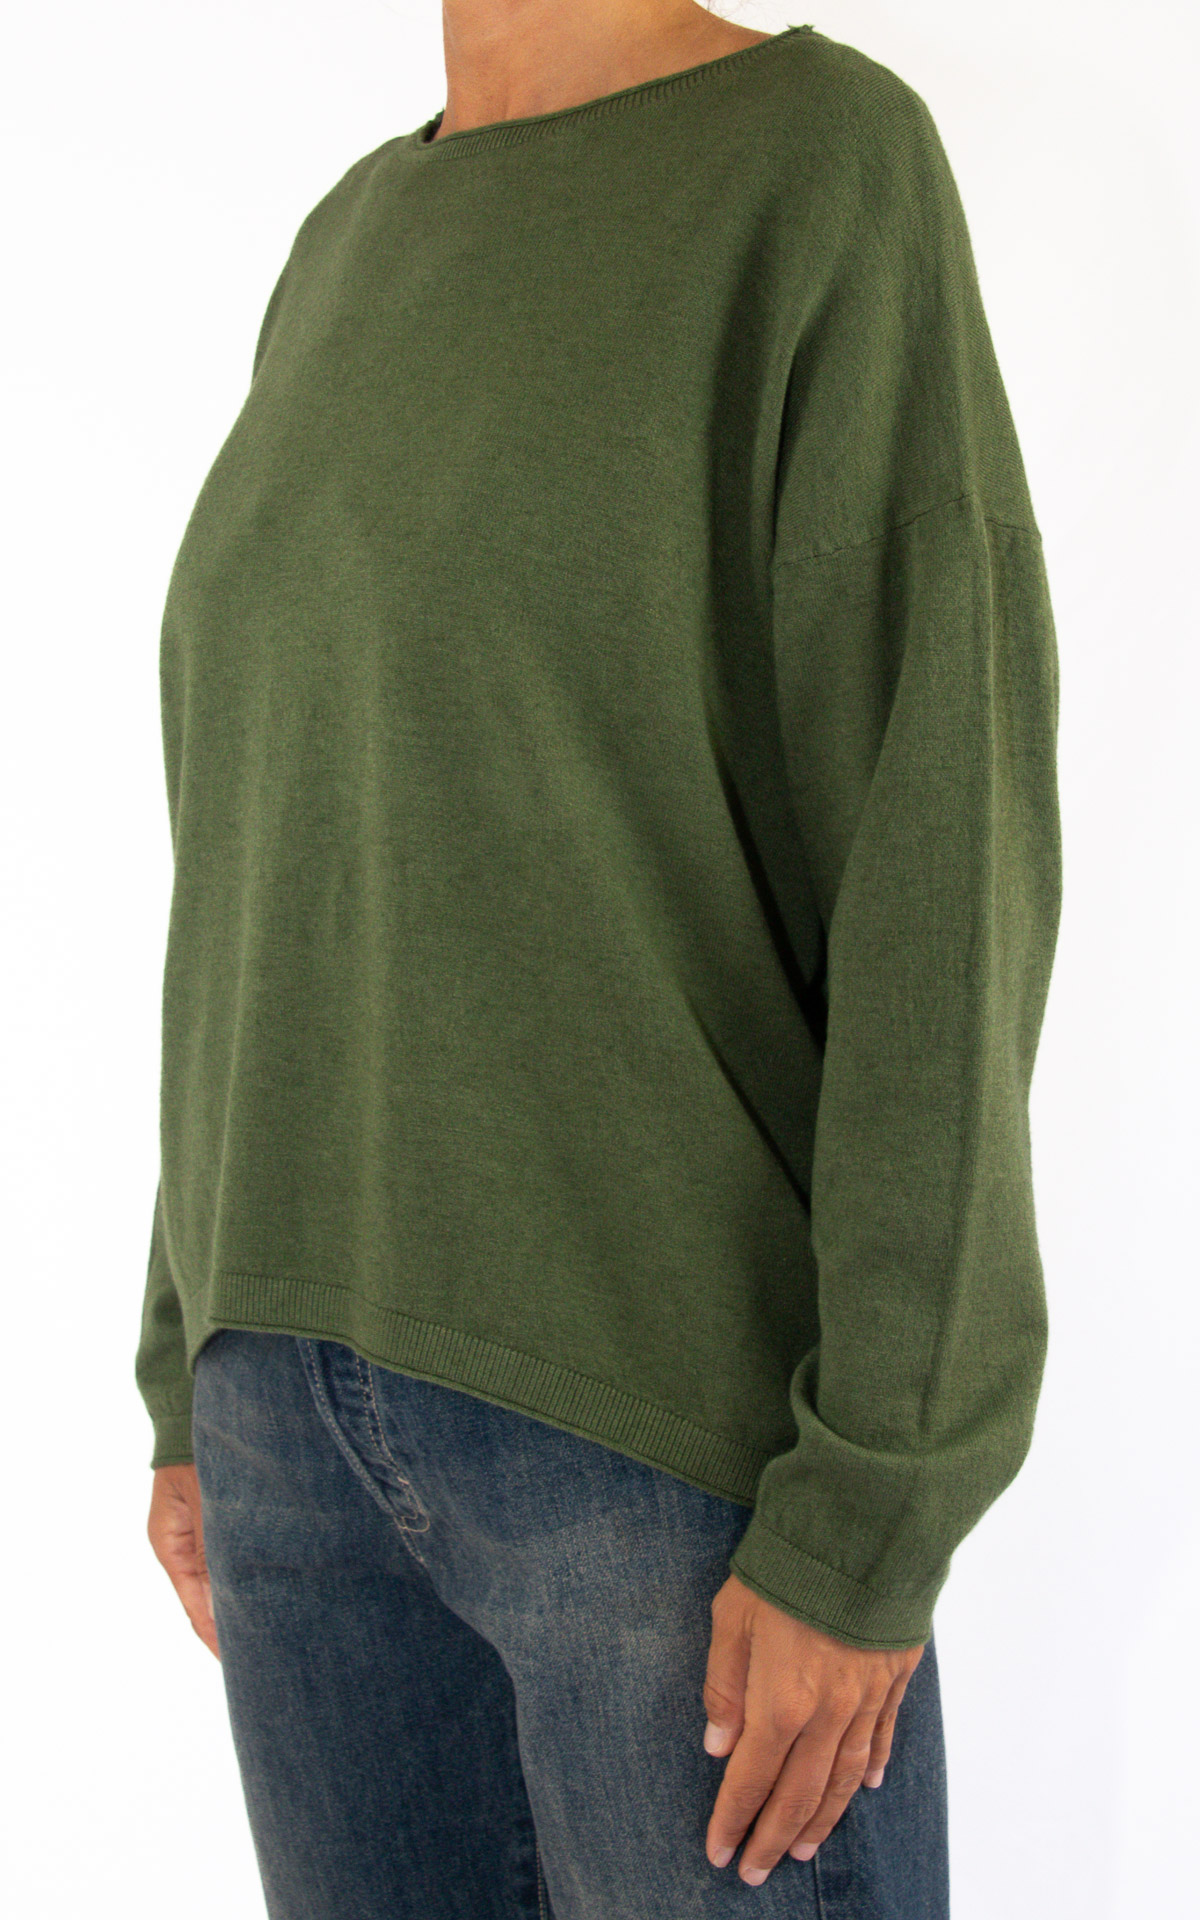 Initial - maglia girocollo - verde militare